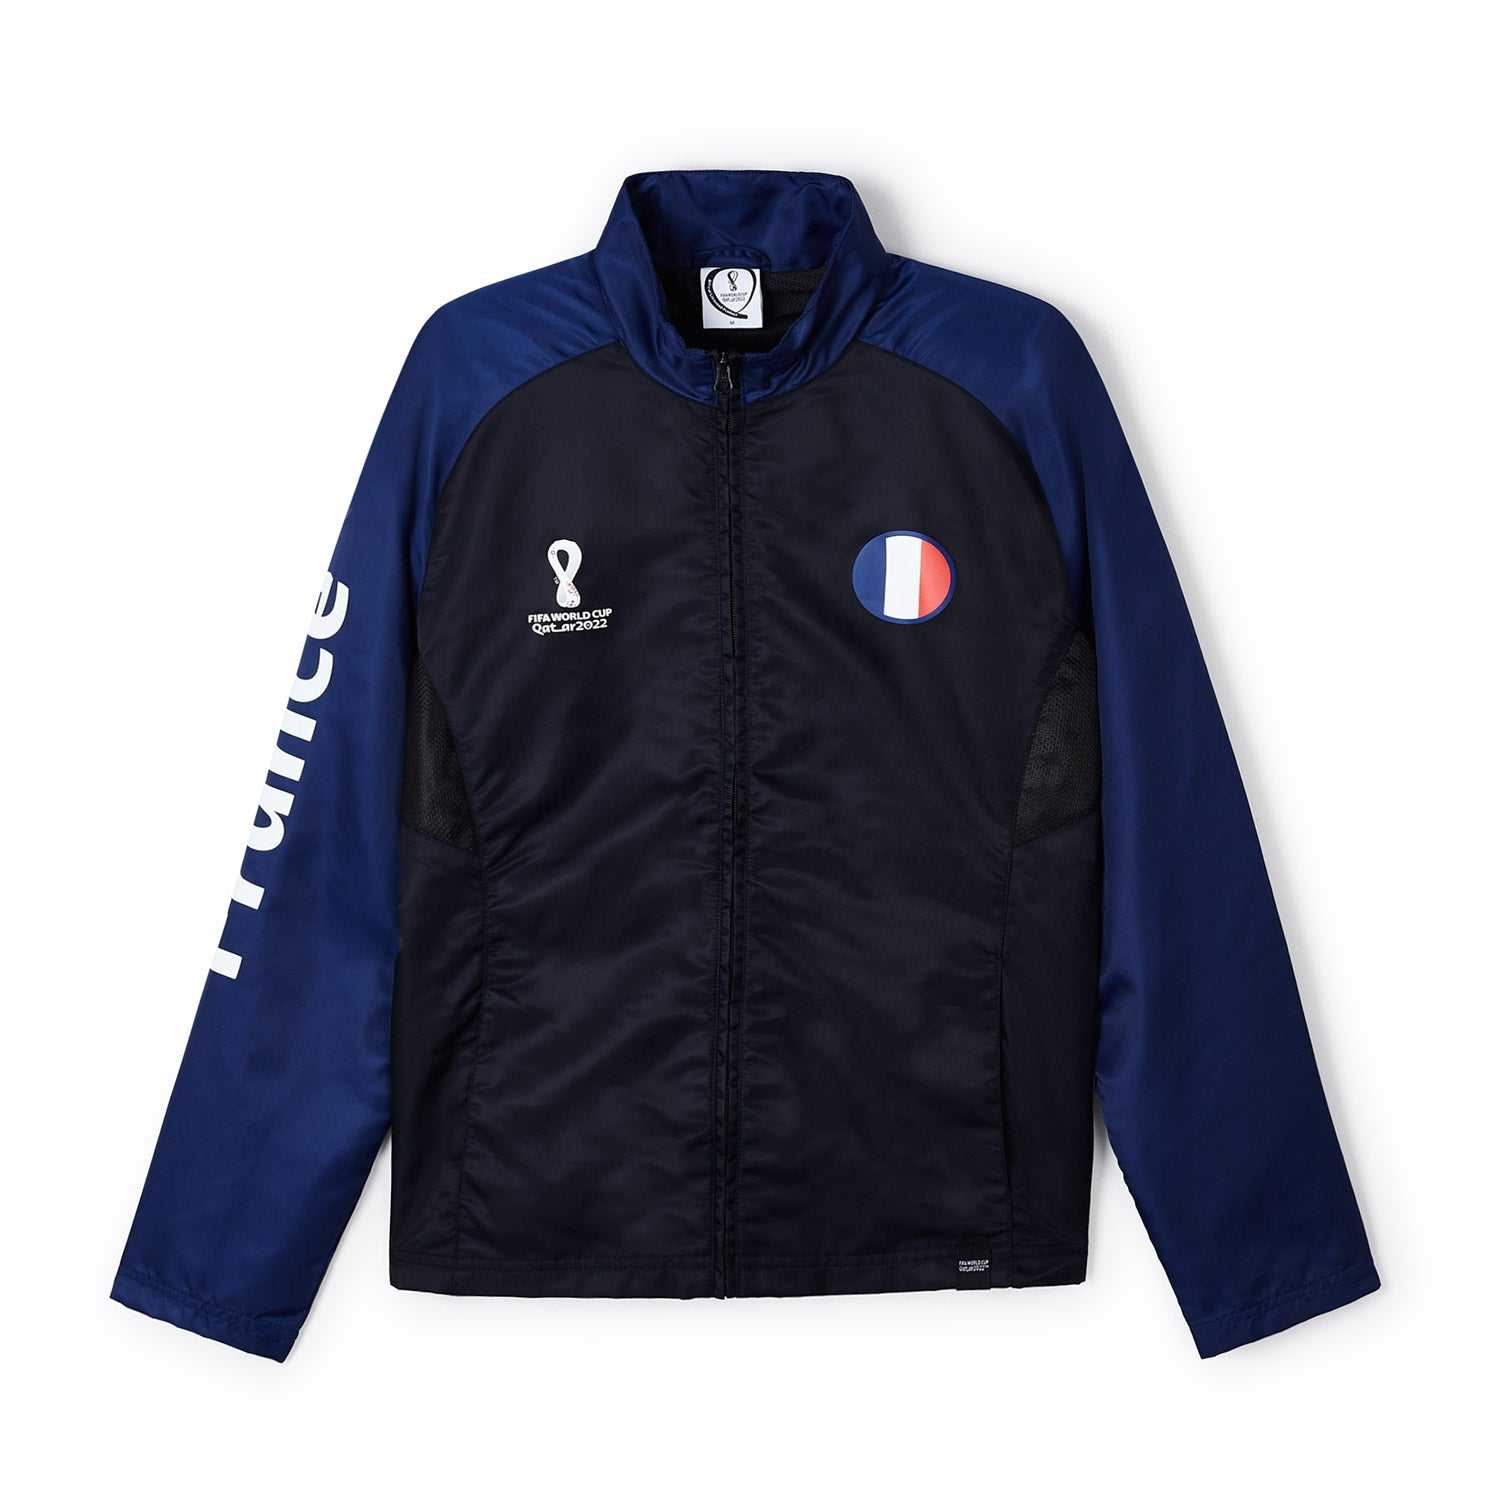 World Cup 2022 France Blue Raglan Jacket - Men's